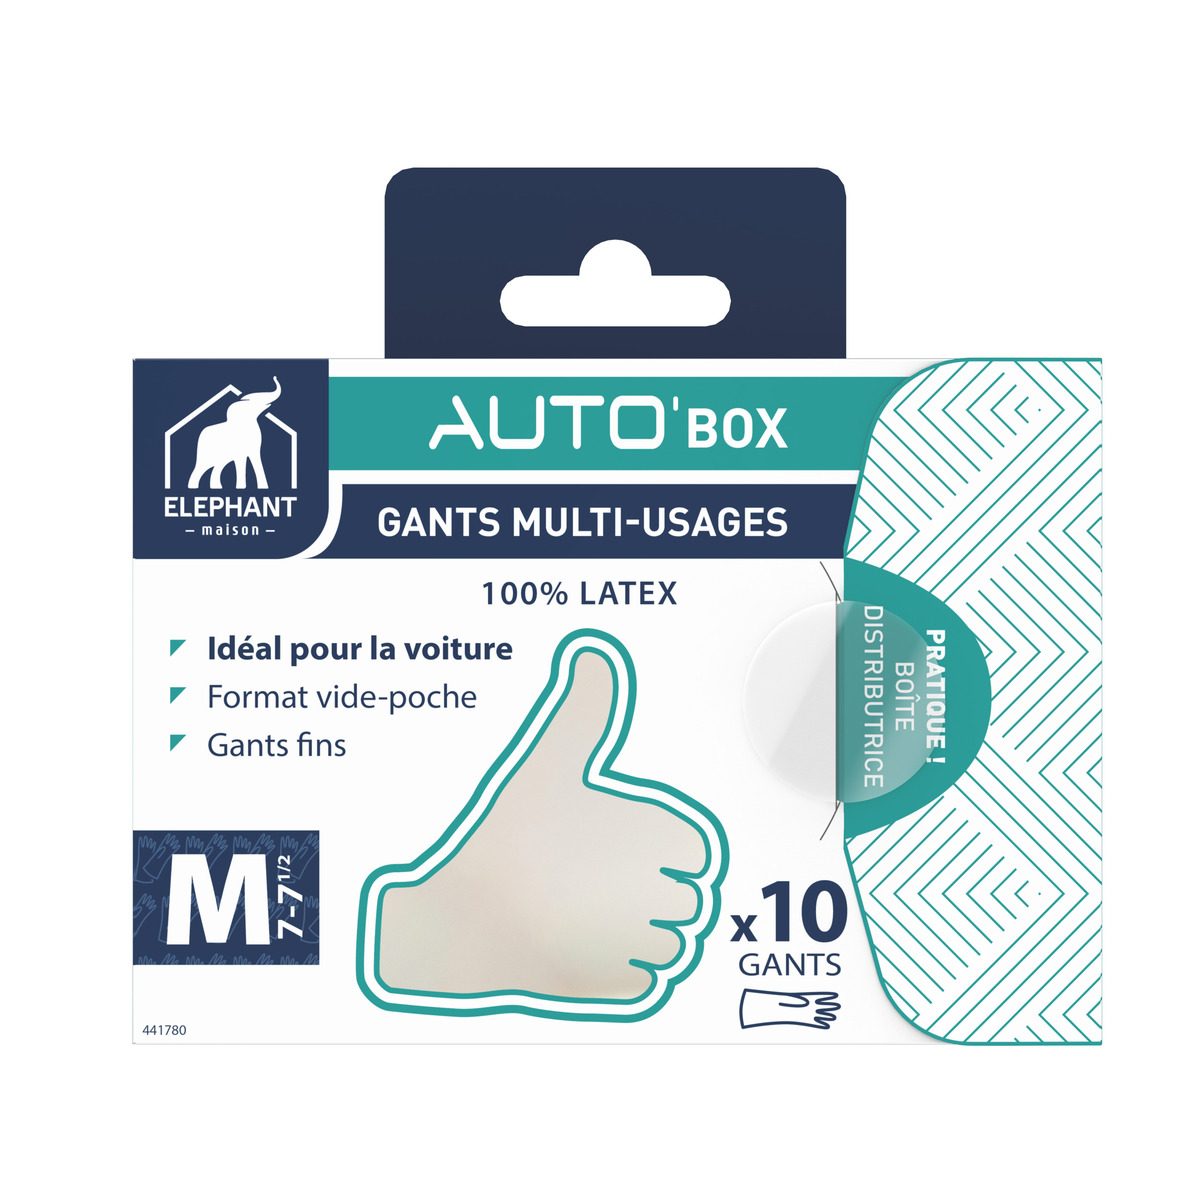 Auto'box gants latex x10 — Gants latex & ménage — Éléphant Maison